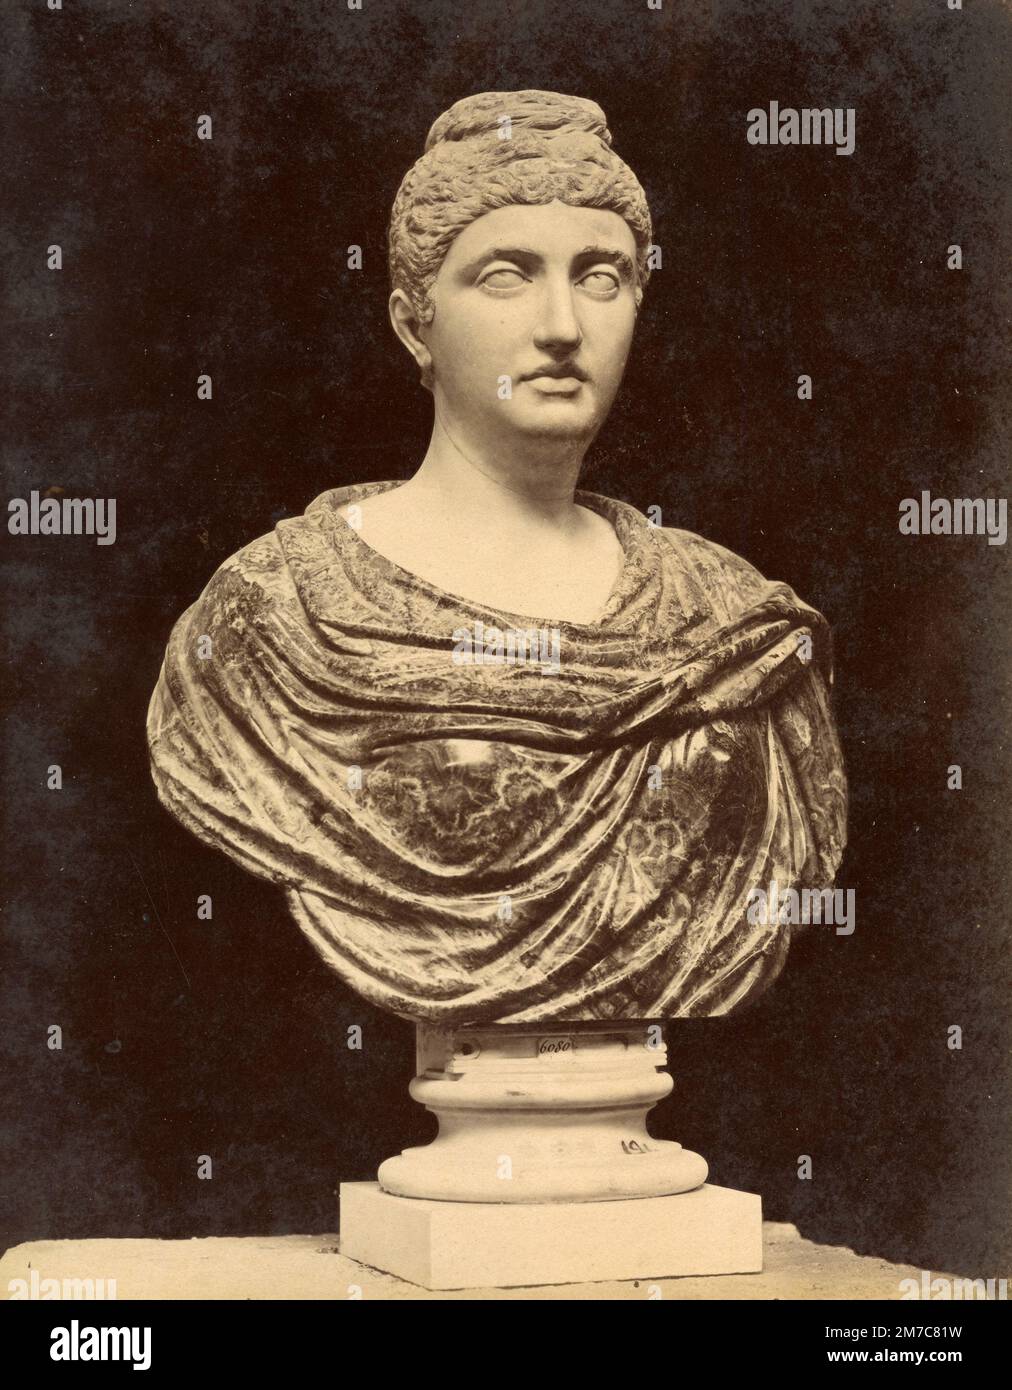 Faustina il giovane, moglie dell'imperatore romano Marco Aurelio busto di marmo, scultura romana, stampa albume, 1870s Foto Stock